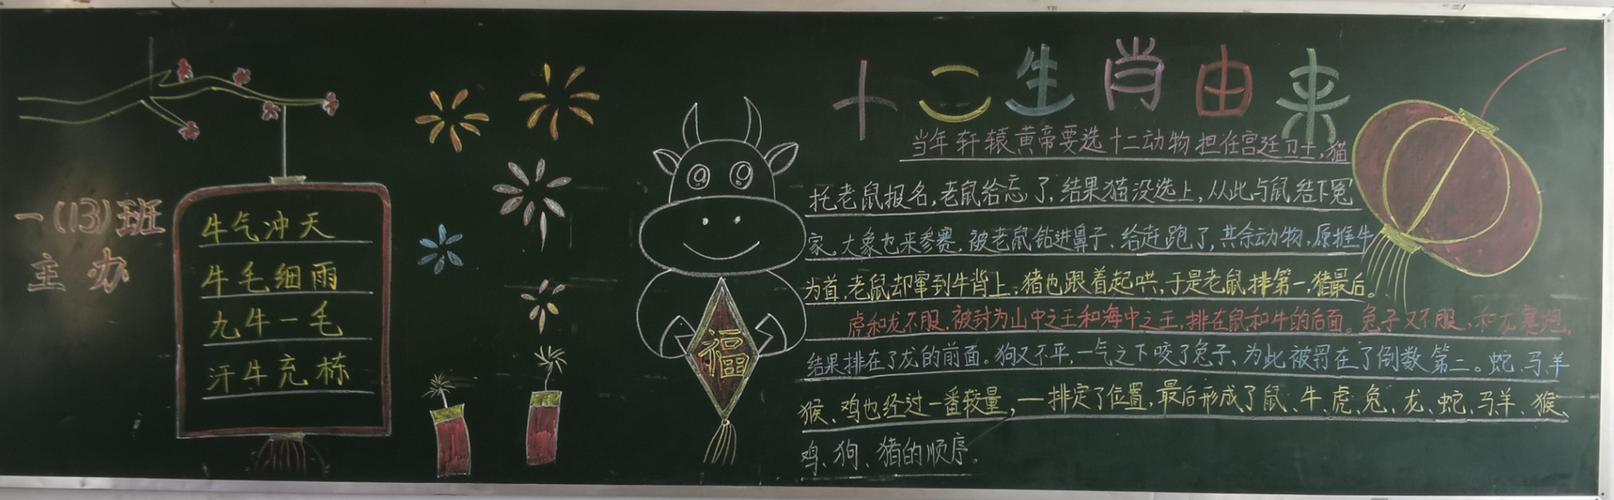 平陆县实验小学一年级黑板报展牛年说牛